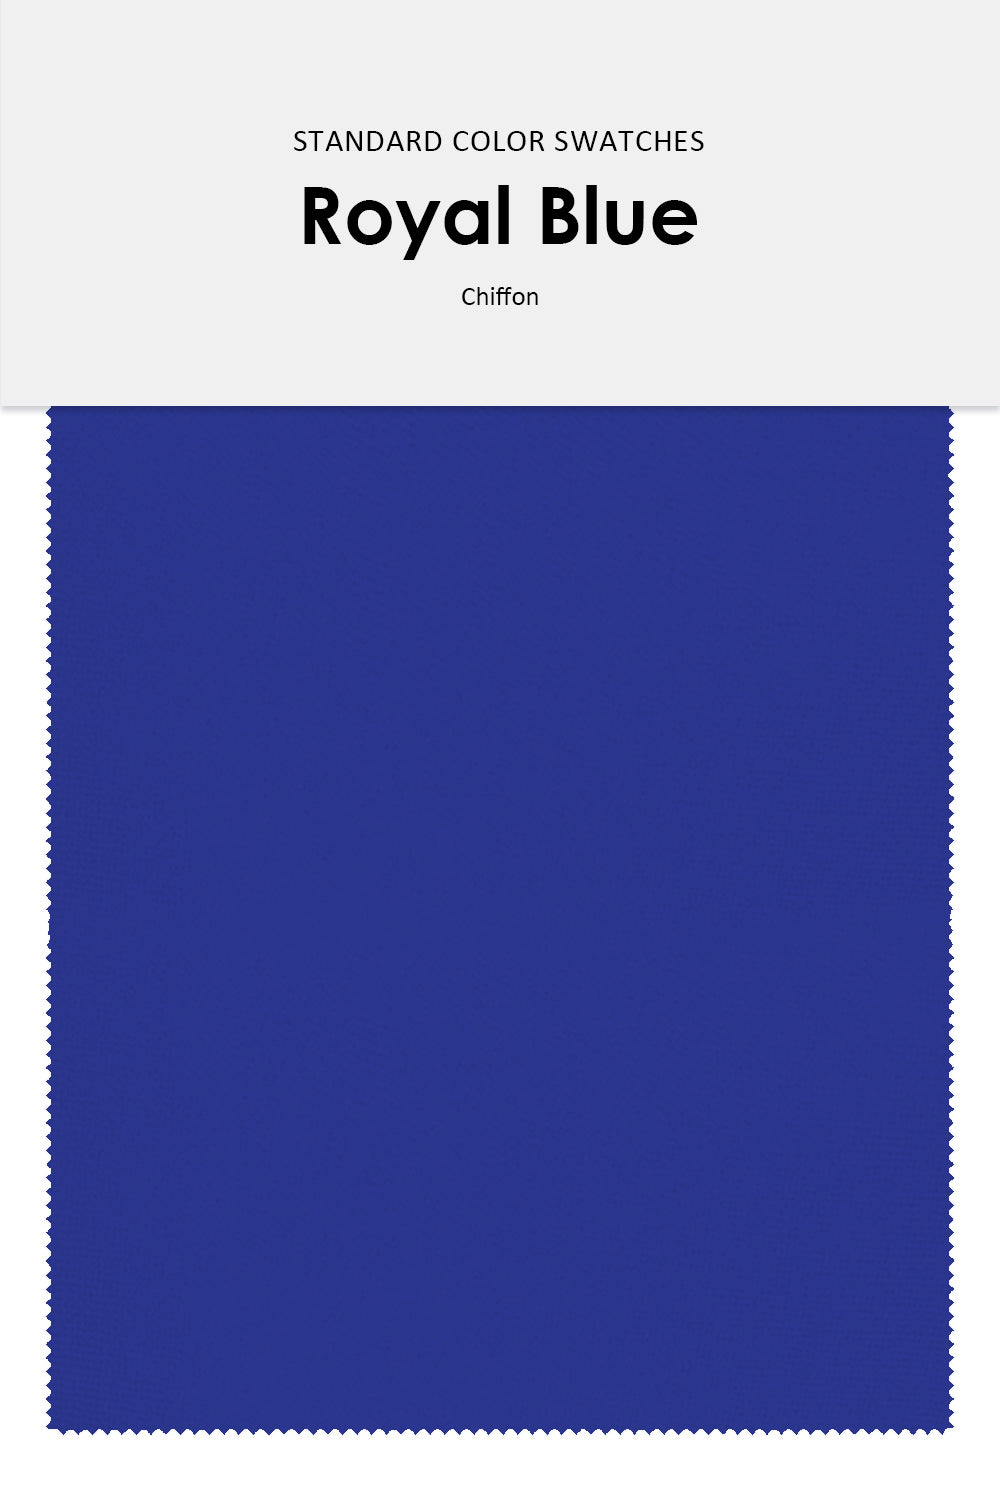 Blue Chiffon Fabric